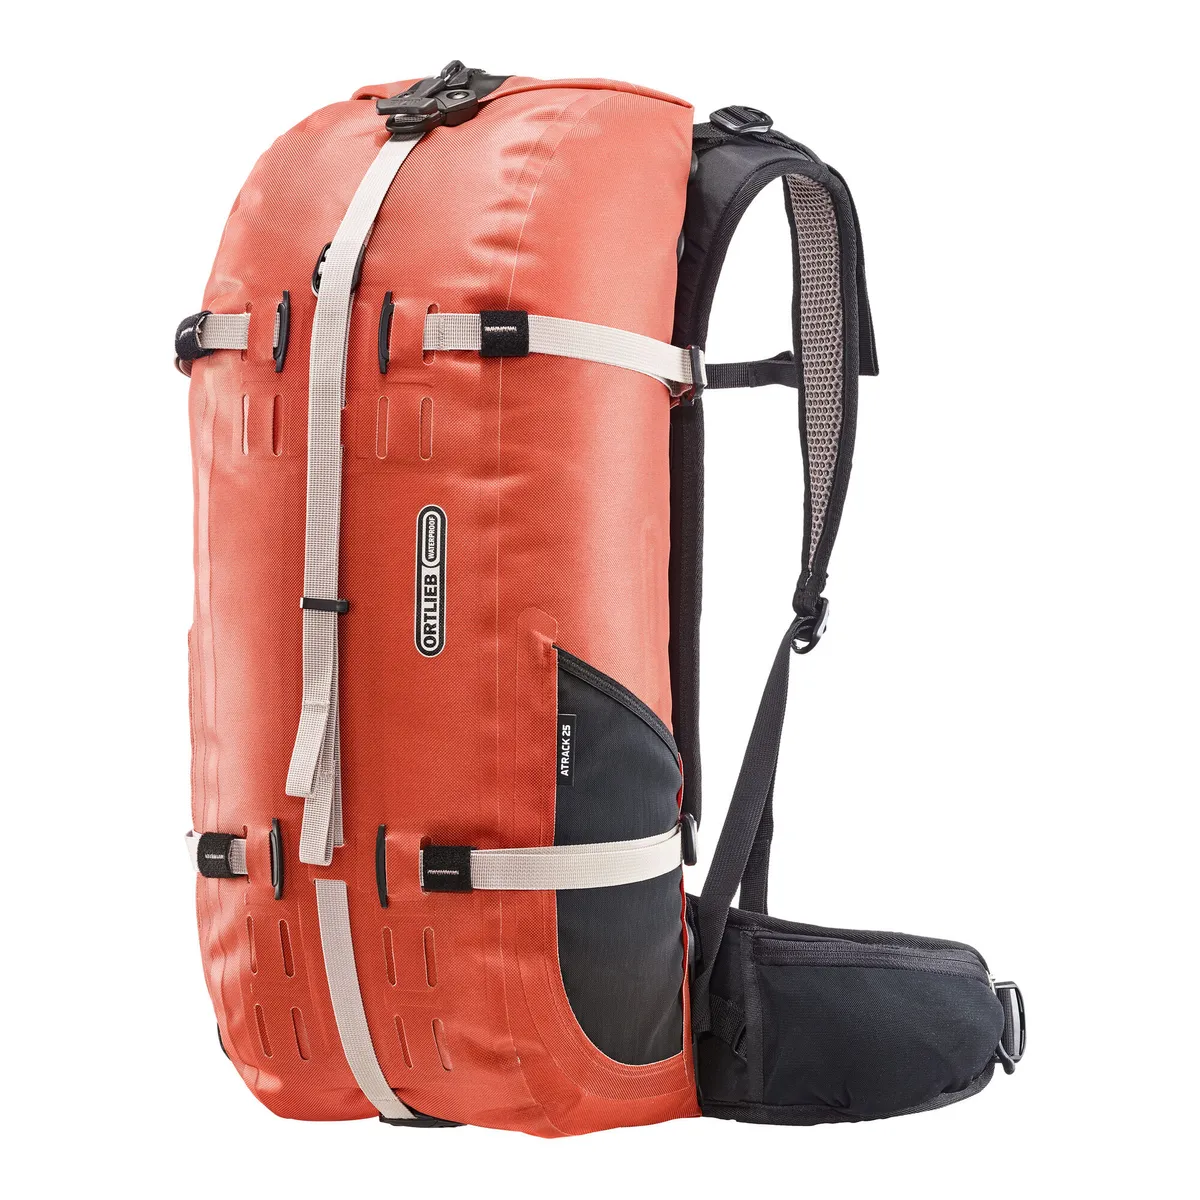 Ortlieb Strack 25 waterproof backpack